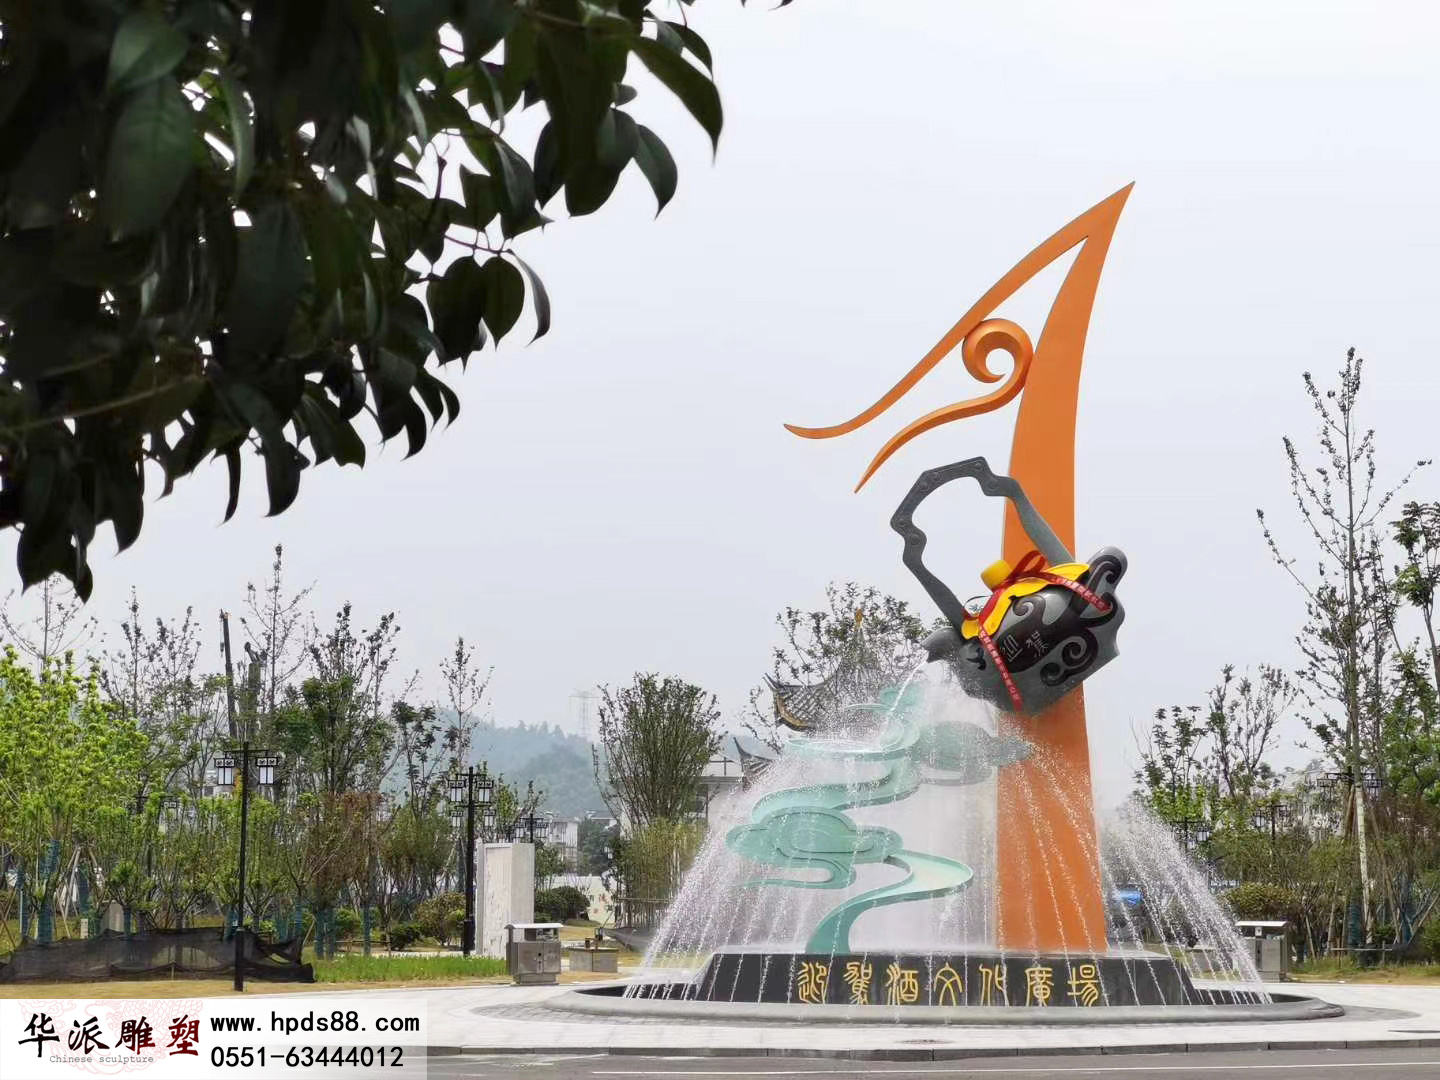 霍山迎驾酒文化公园景观雕塑群——安徽华派雕塑创作。